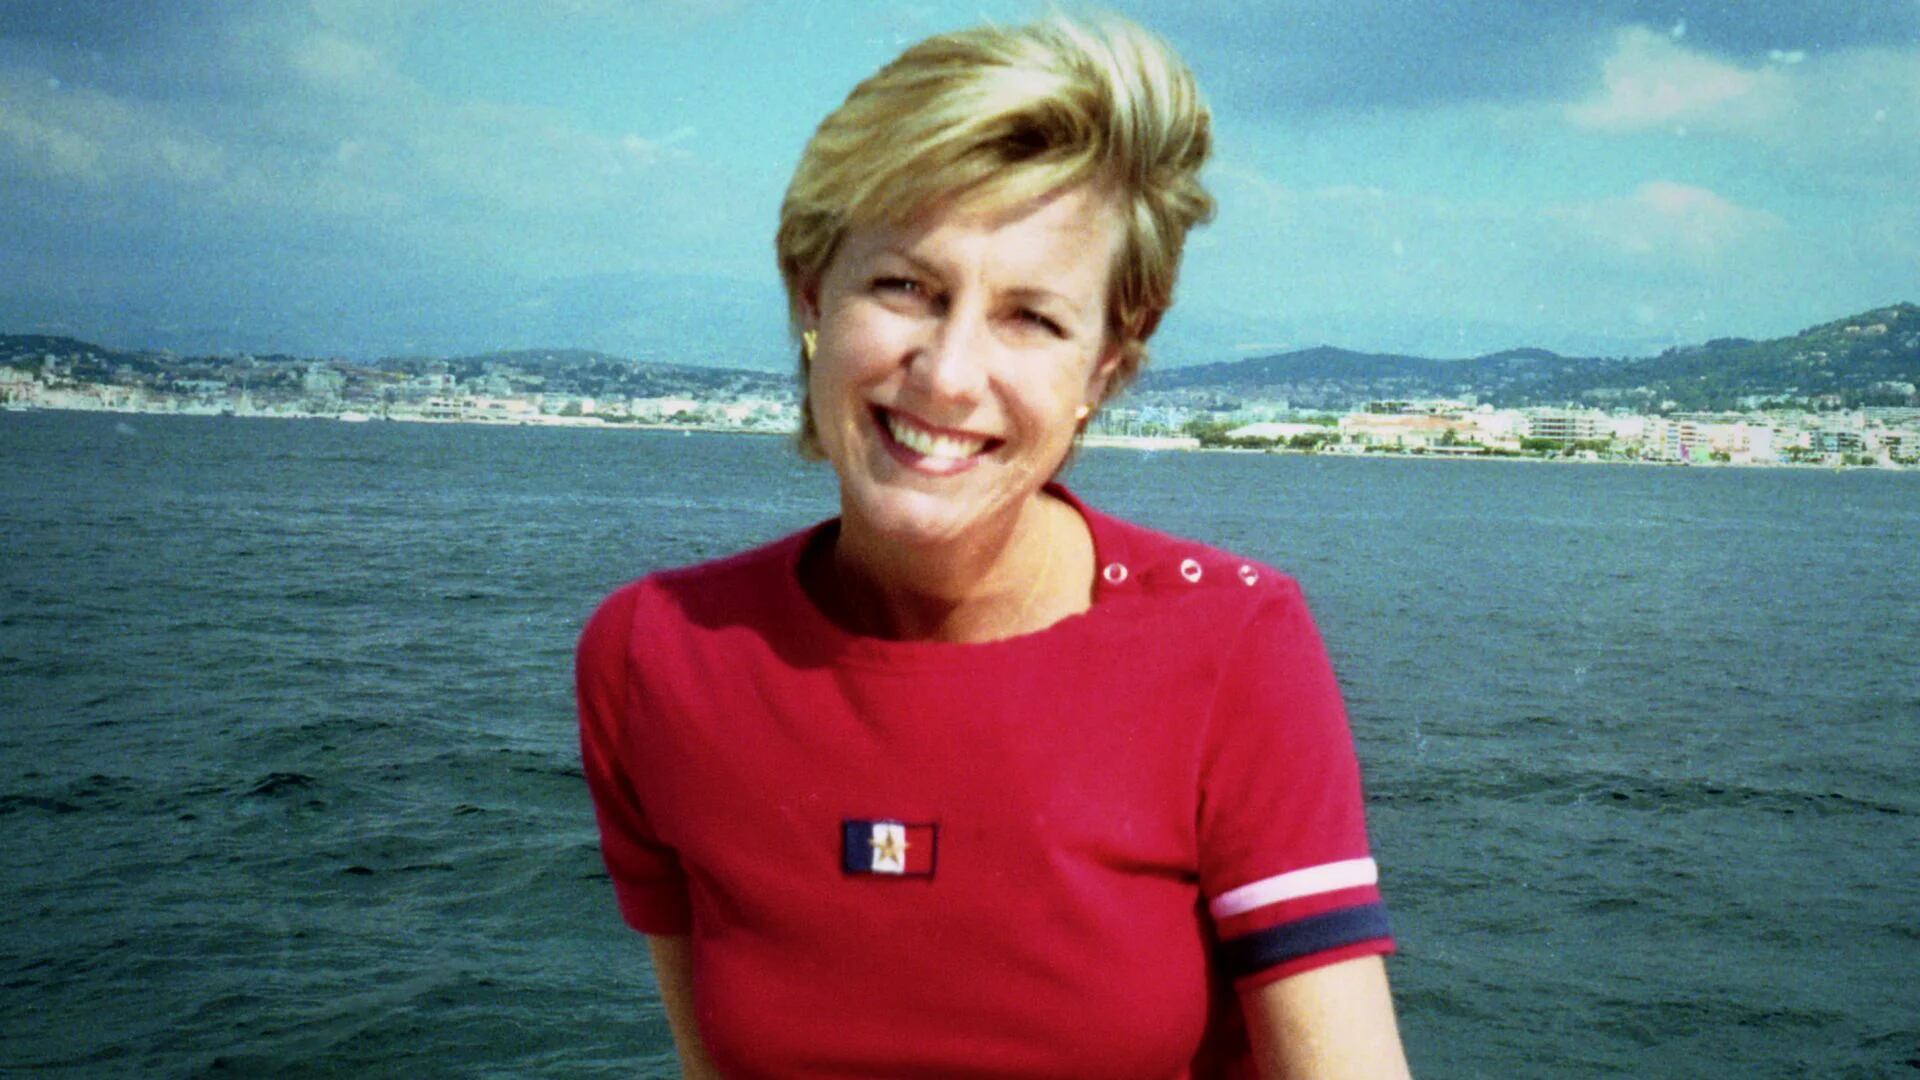 El crimen de una periodista que conmocionó a Gran Bretaña: llega la docuserie “¿Quién mató a Jill Dando?”